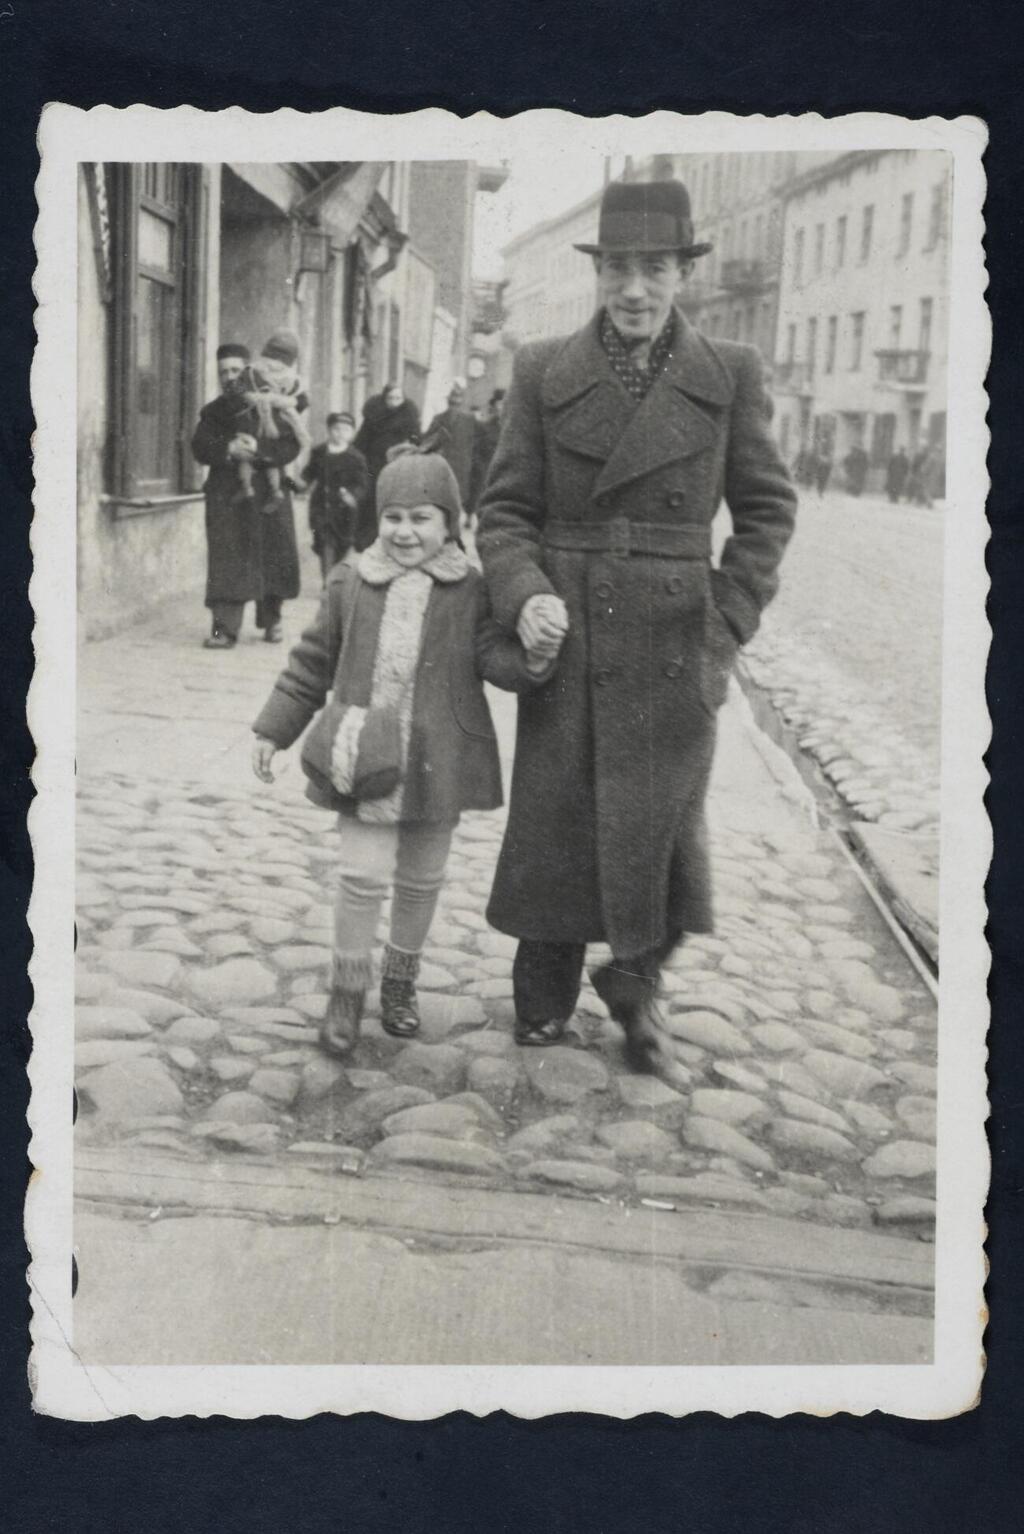 רות רושצקי עם הדוד דוד רושצקי (אבא של מרים תמרי) לפני המלחמה